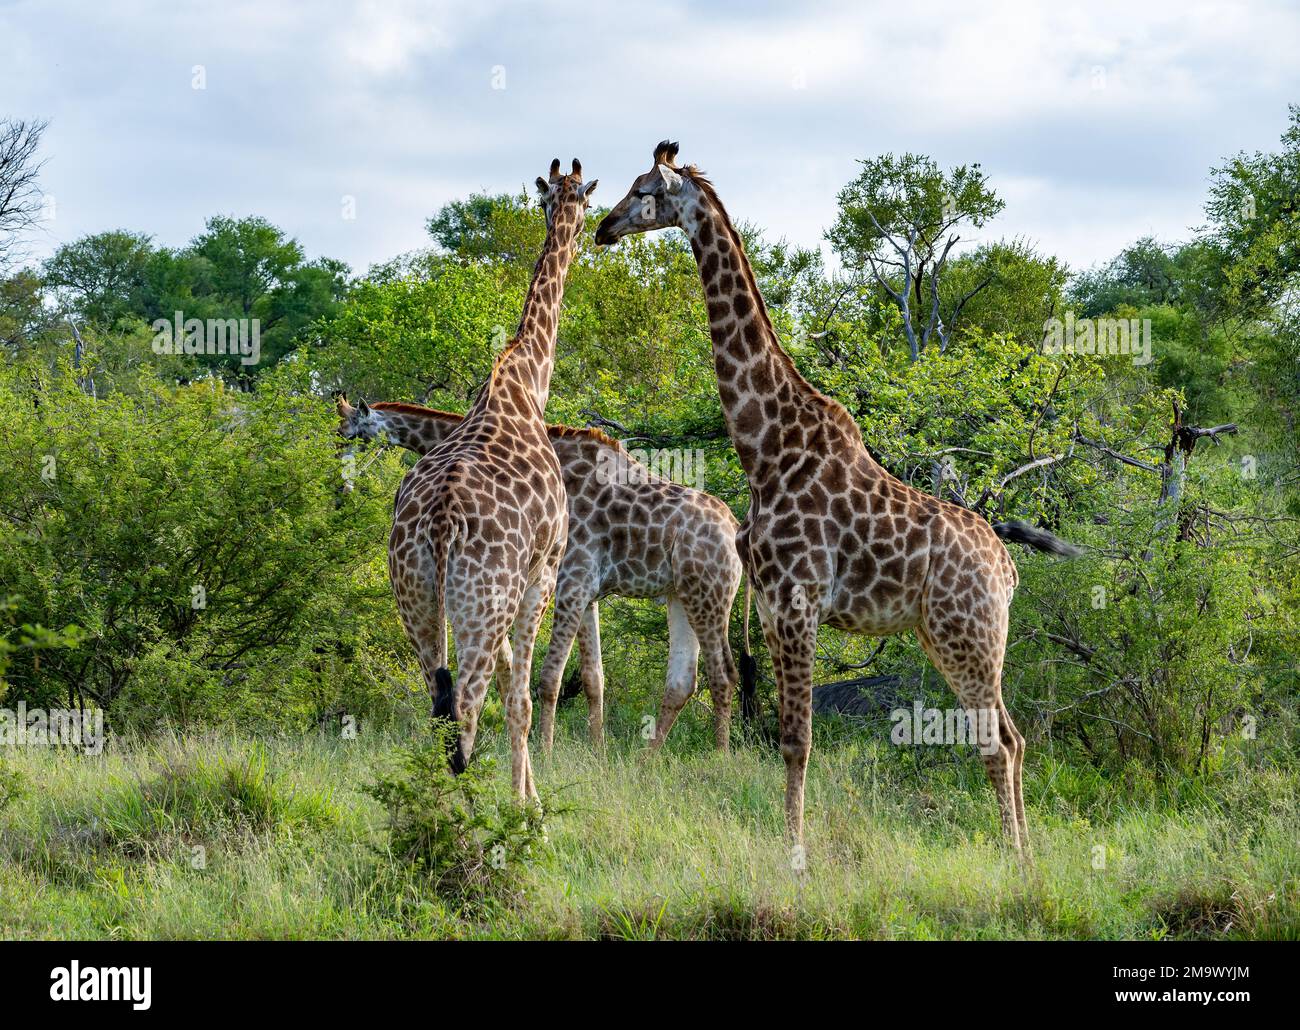 Un troupeau de girafes sud-africains (Giraffa giraffa) se déplaçant dans les buissons. Parc national Kruger, Afrique du Sud. Banque D'Images